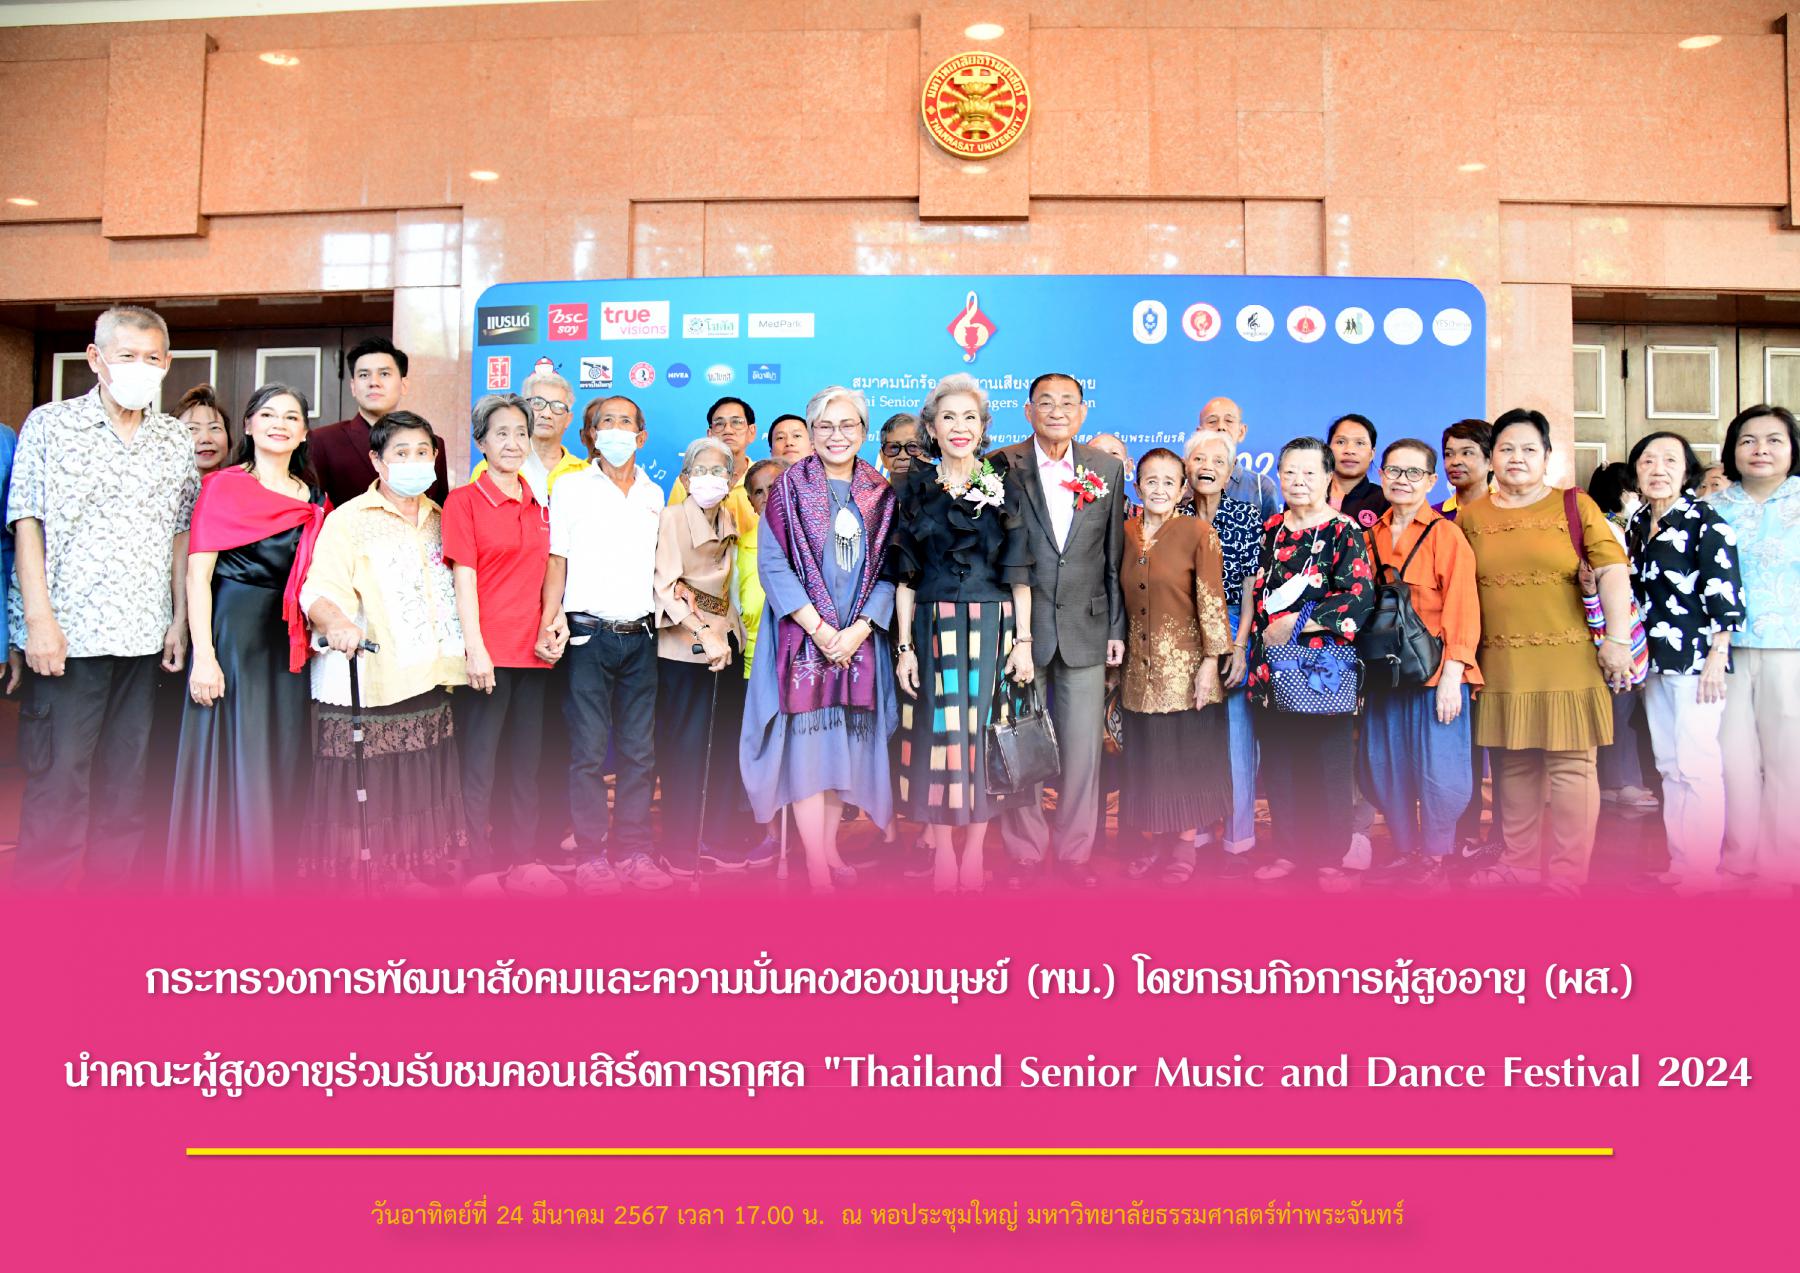 กระทรวงการพัฒนาสังคมและความมั่นคงของมนุษย์ (พม.) โดยกรมกิจการผู้สูงอายุ (ผส.) นำคณะผู้สูงอายุร่วมรับชมคอนเสิร์ตการกุศล "Thailand Senior Music and Dance Festival 2024